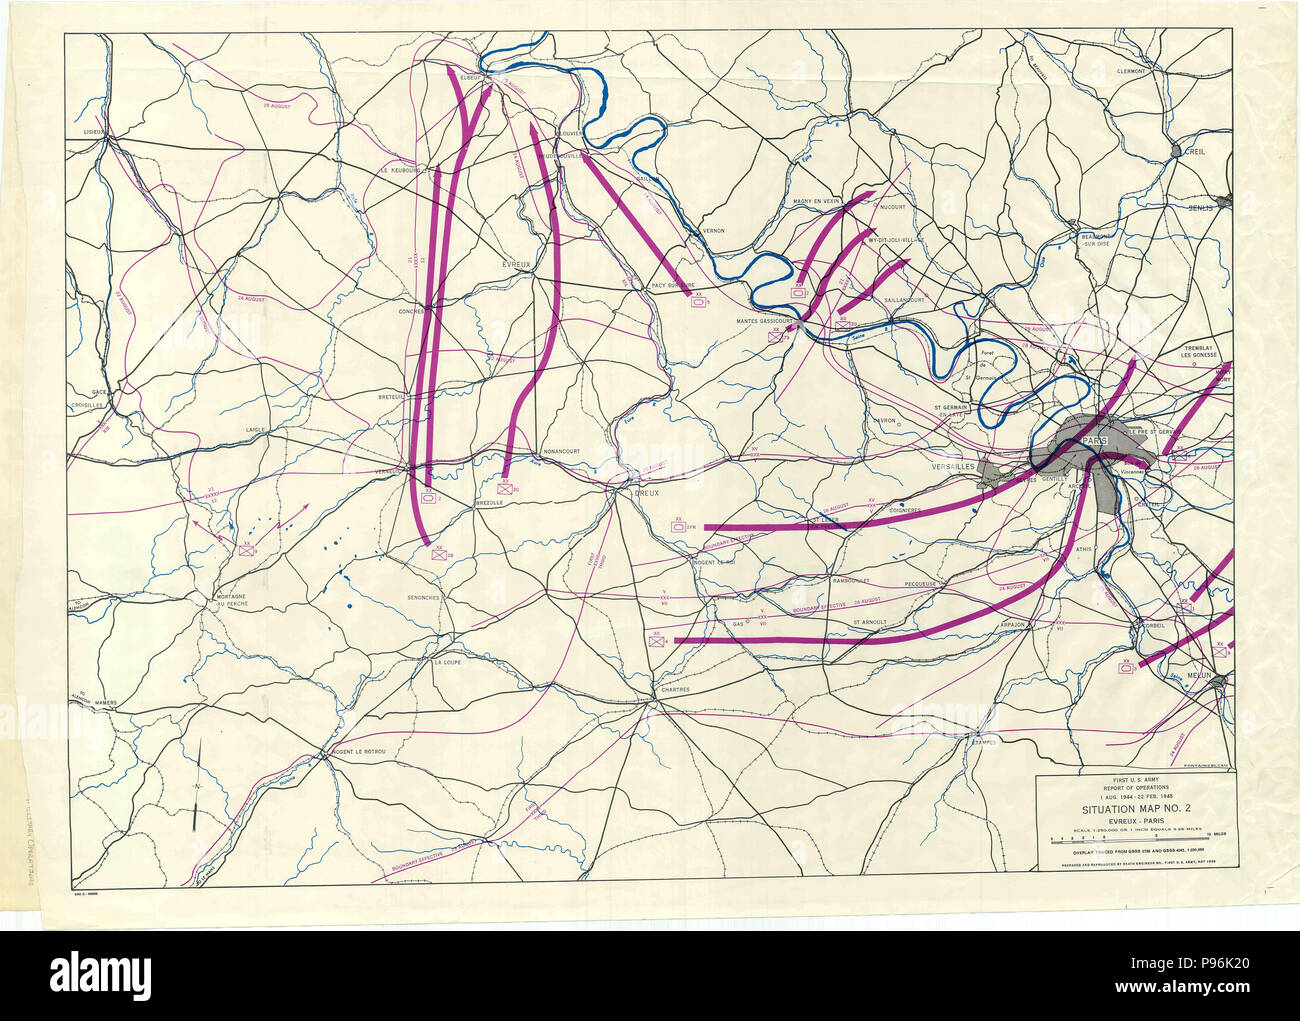 France Guerre Mondiale 2 Carte - Carte de Situation no 2 - Evreux - Paris - 1 août 1944 - 22 Février 1945 Premier rapport d'opérations de l'Armée américaine Banque D'Images